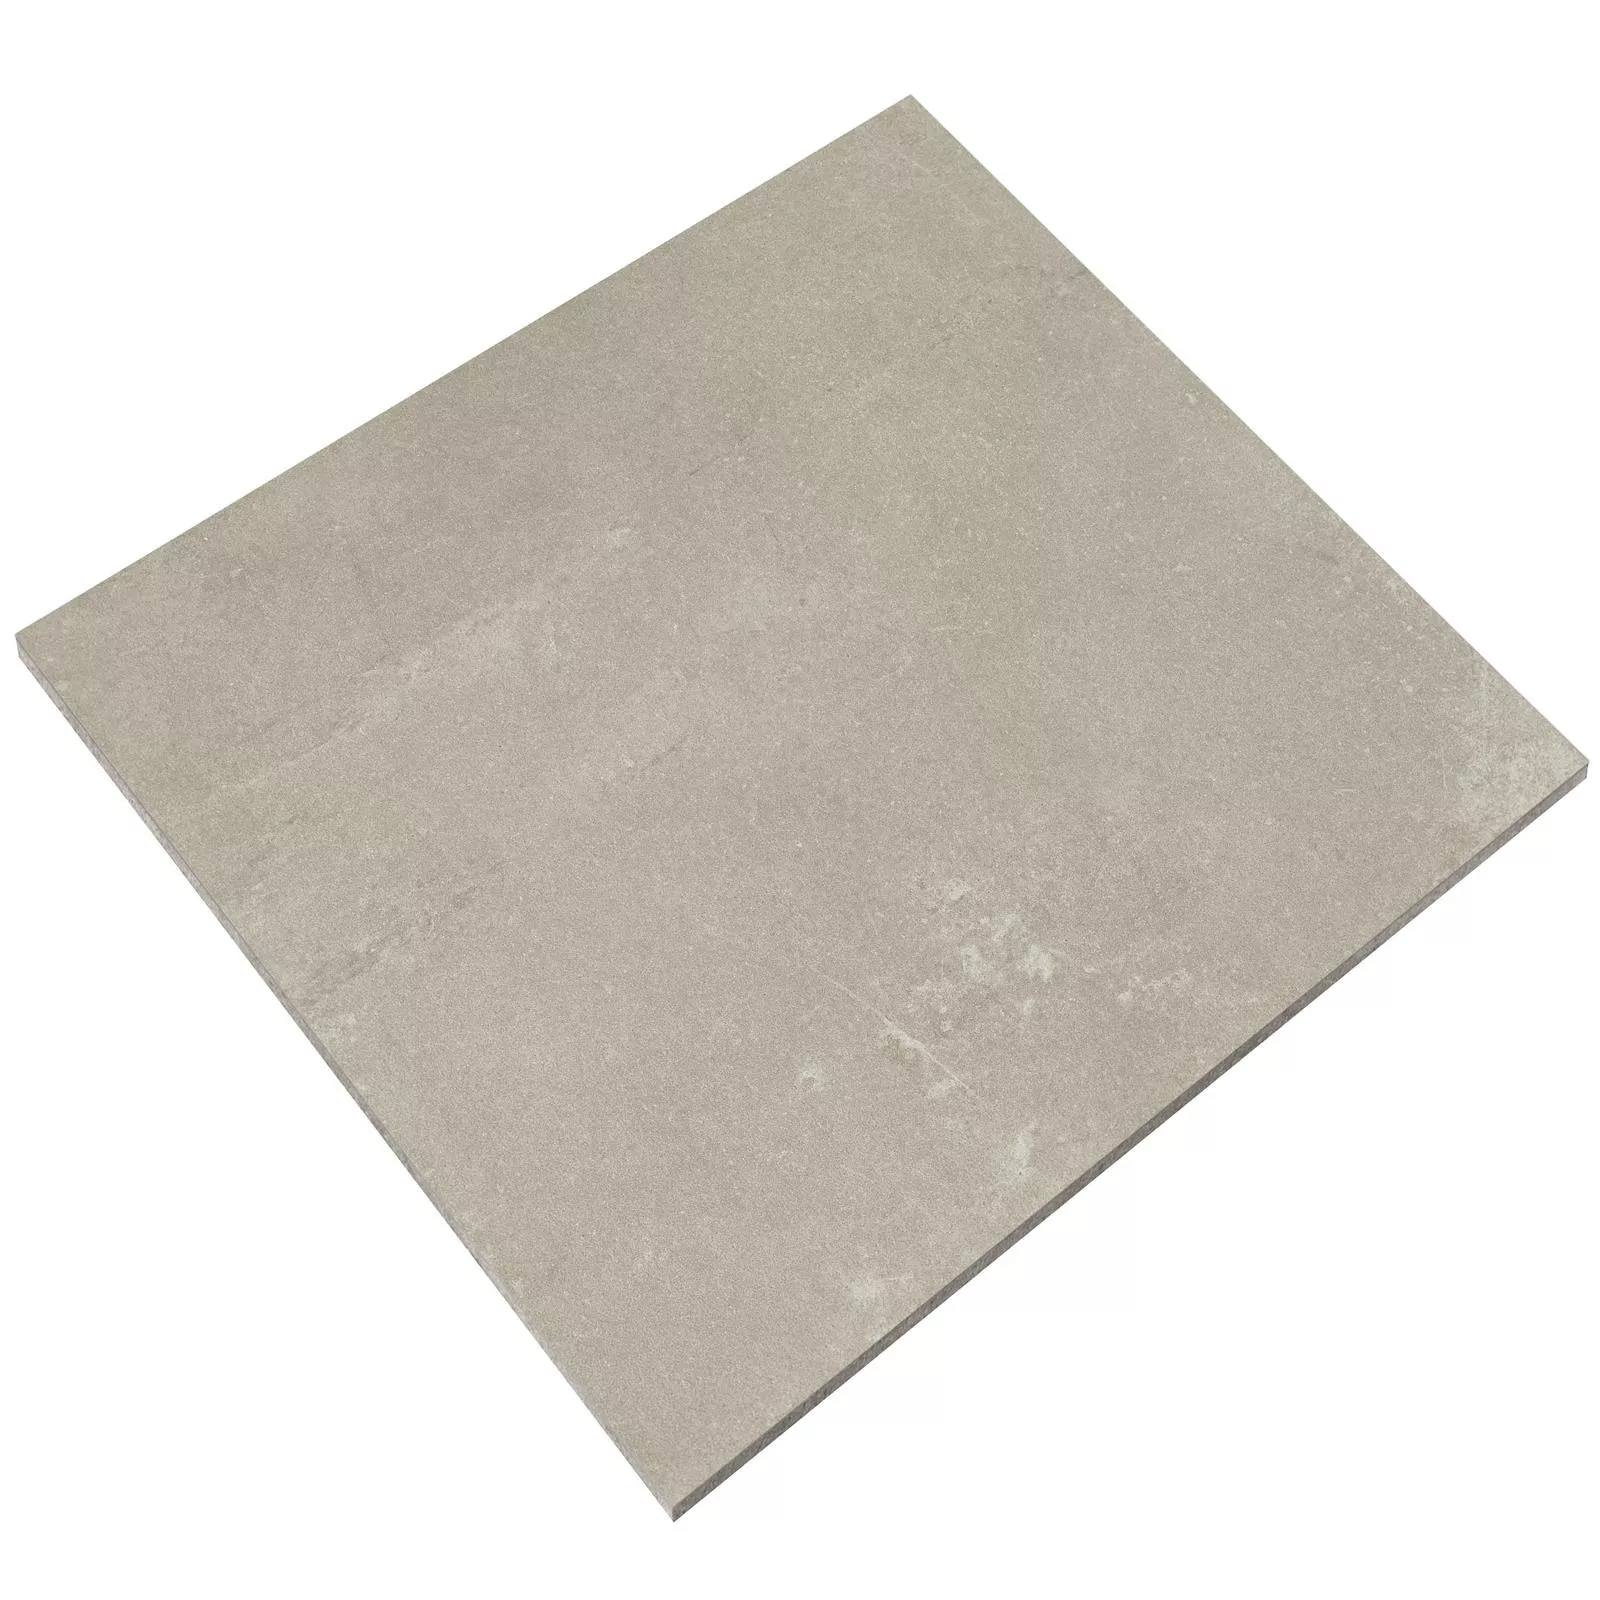 Sample Vloertegels Cement Optic Nepal Slim Beige 100x100cm